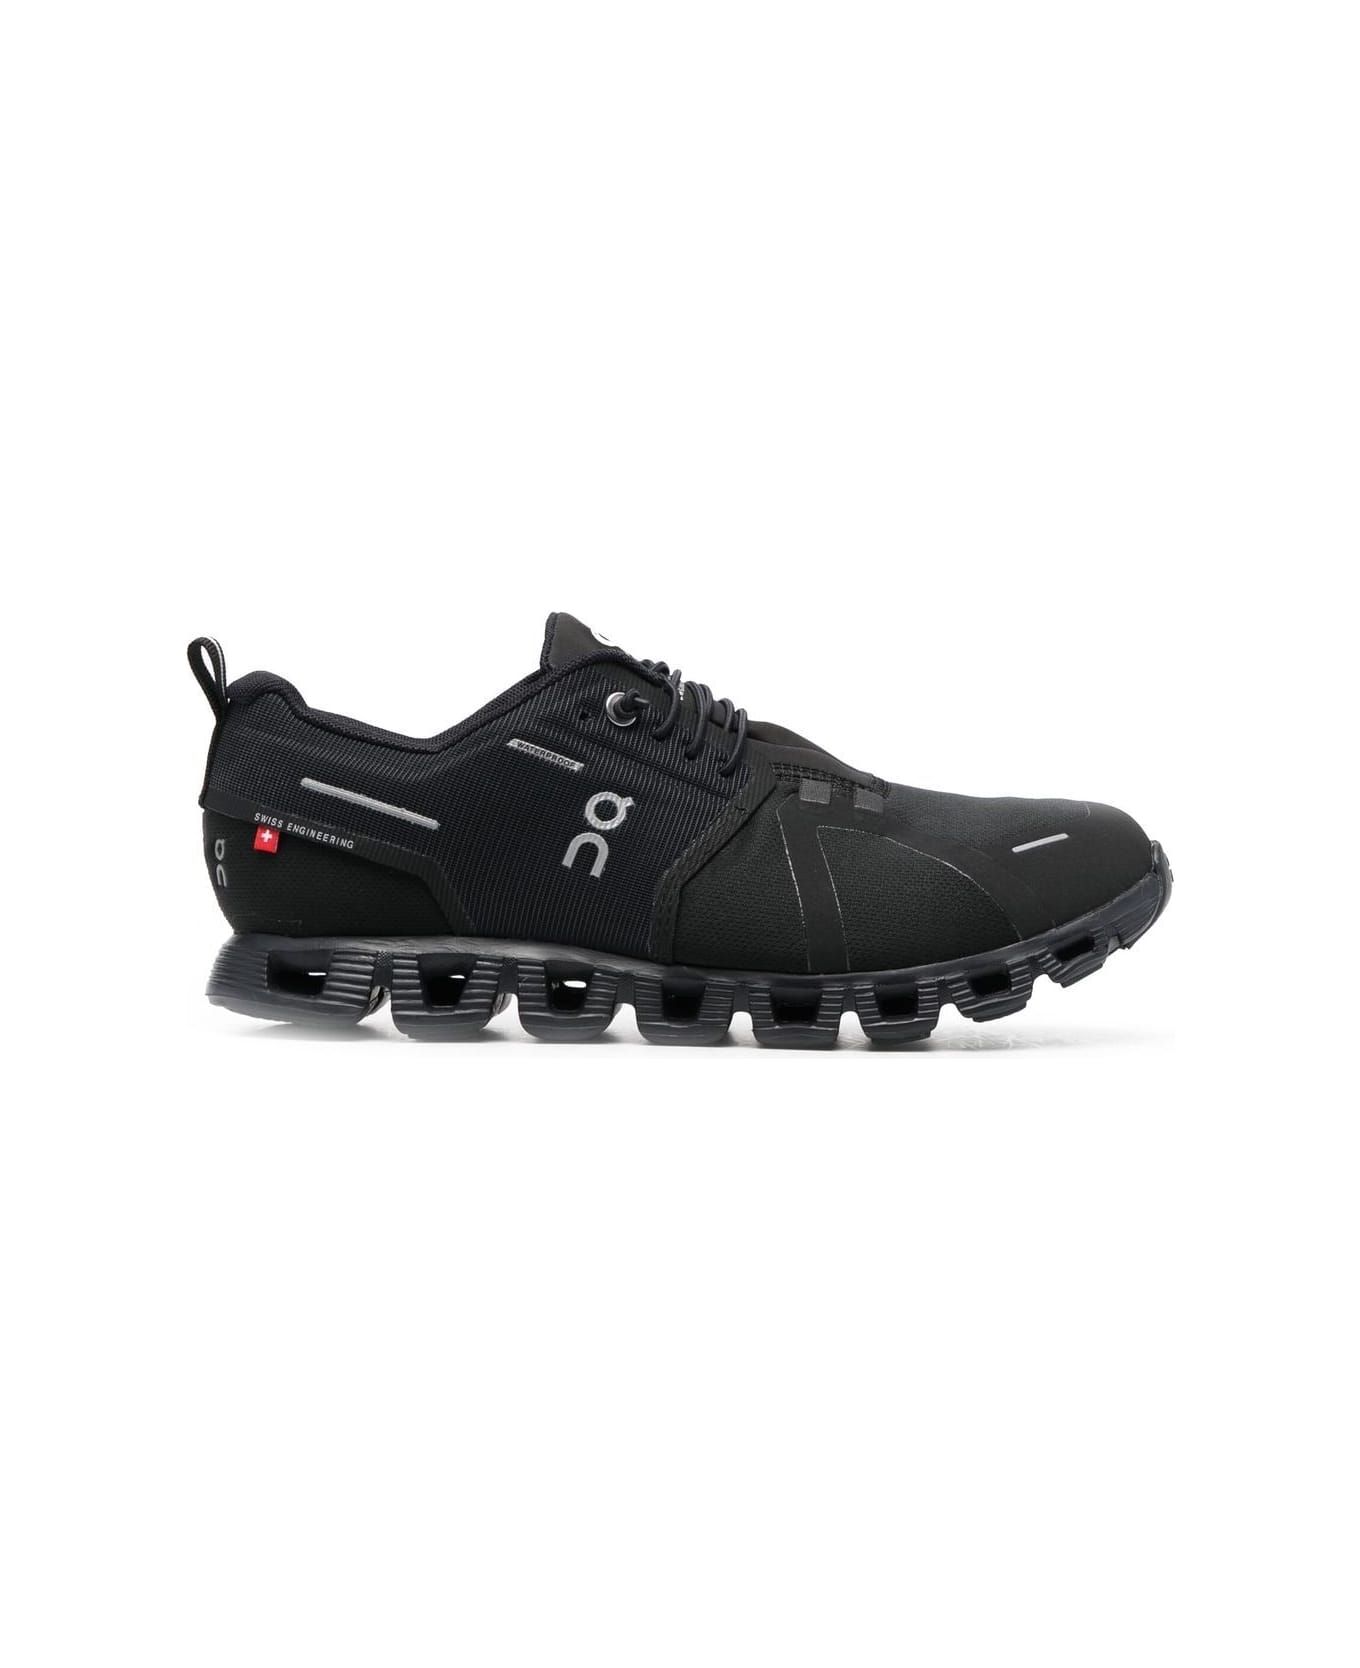 ON Cloud 5 Waterproof Sneakers - All Black